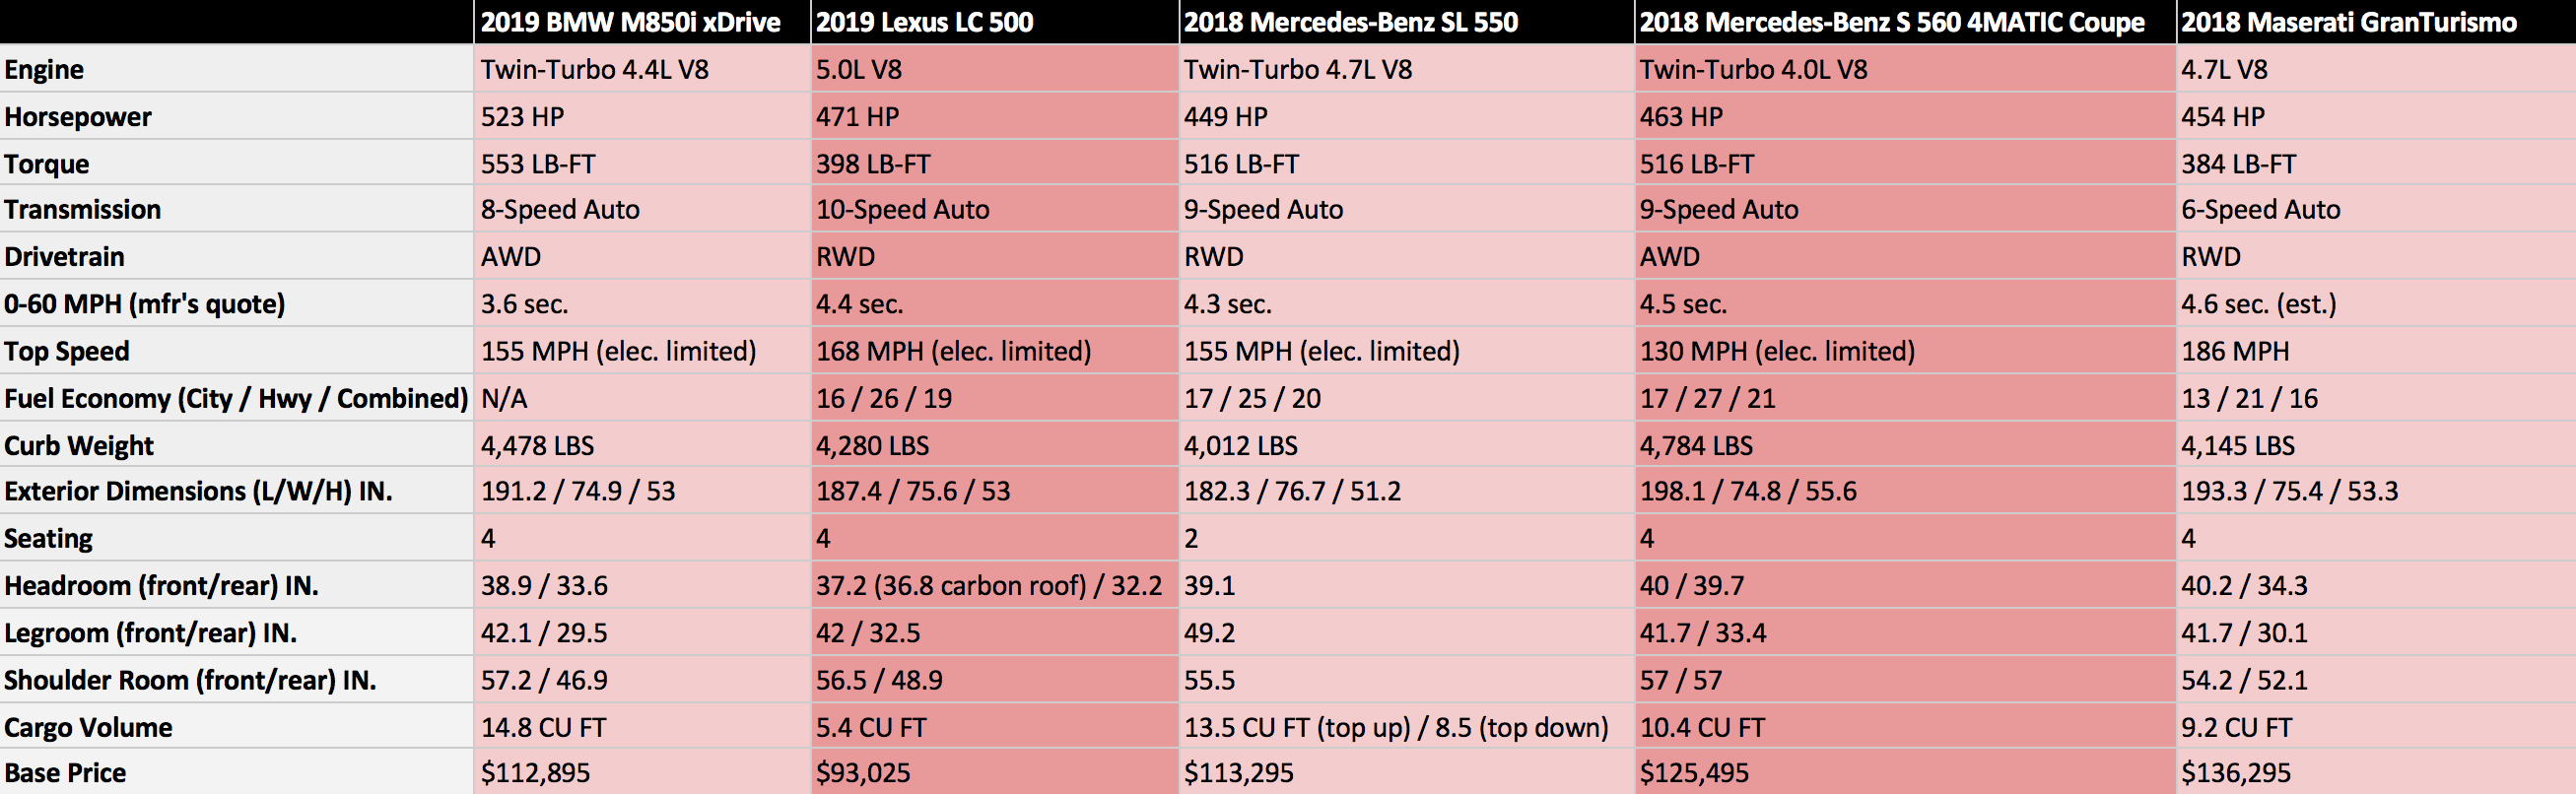 Mercedes Model Comparison Chart